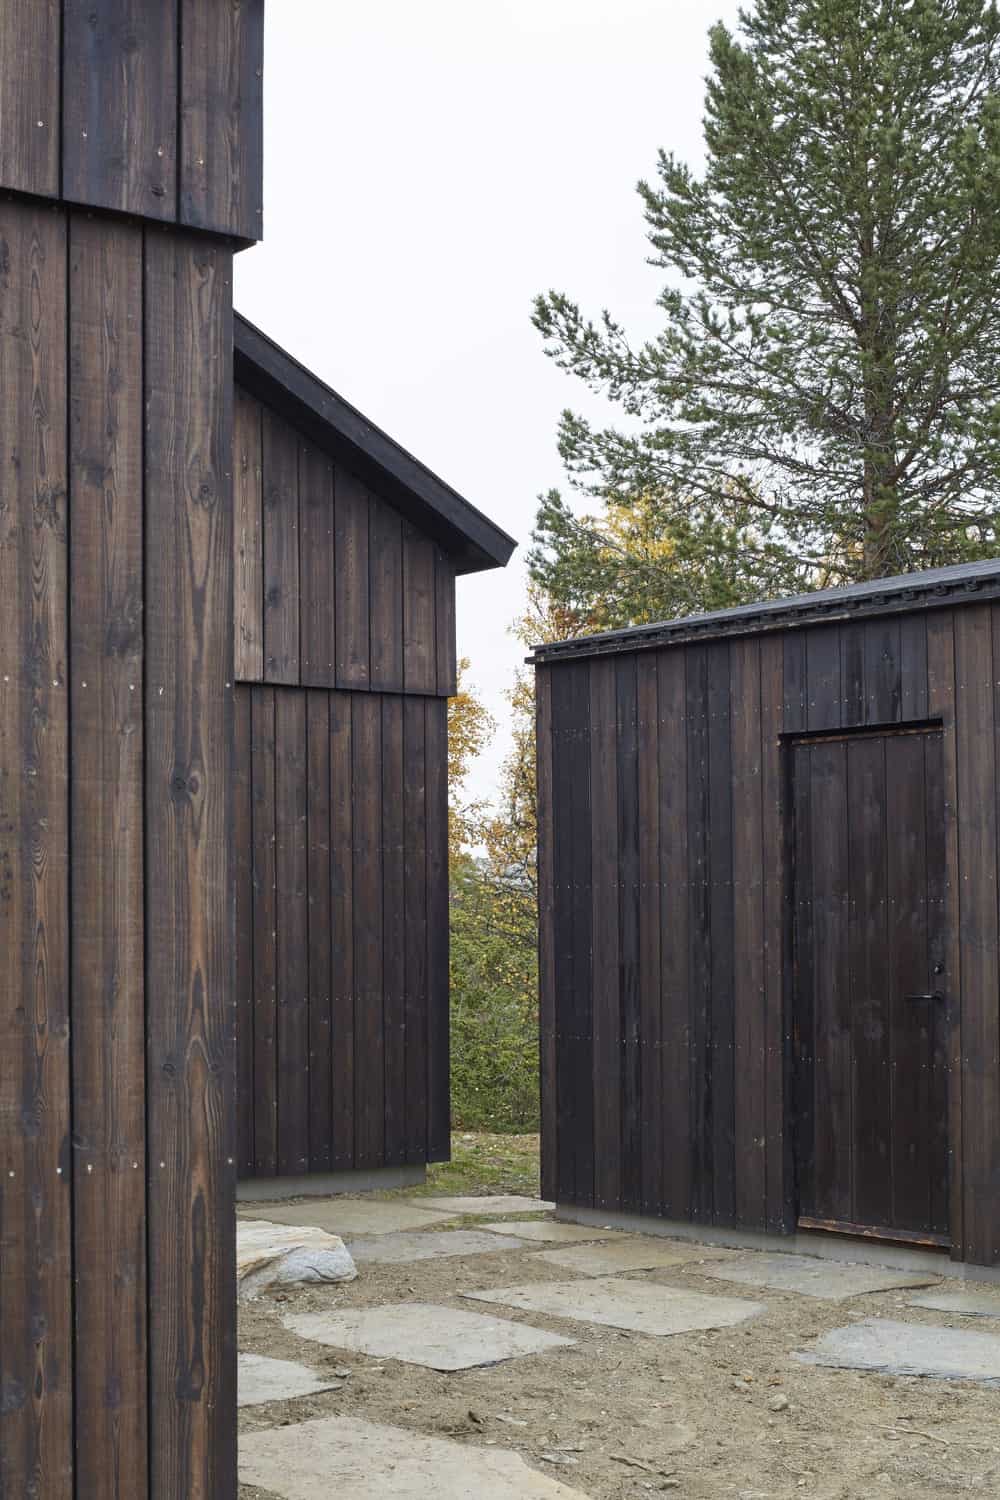 房子的结构与其深色的木质色调和设计以及与墙壁融为一体的门保持一致。